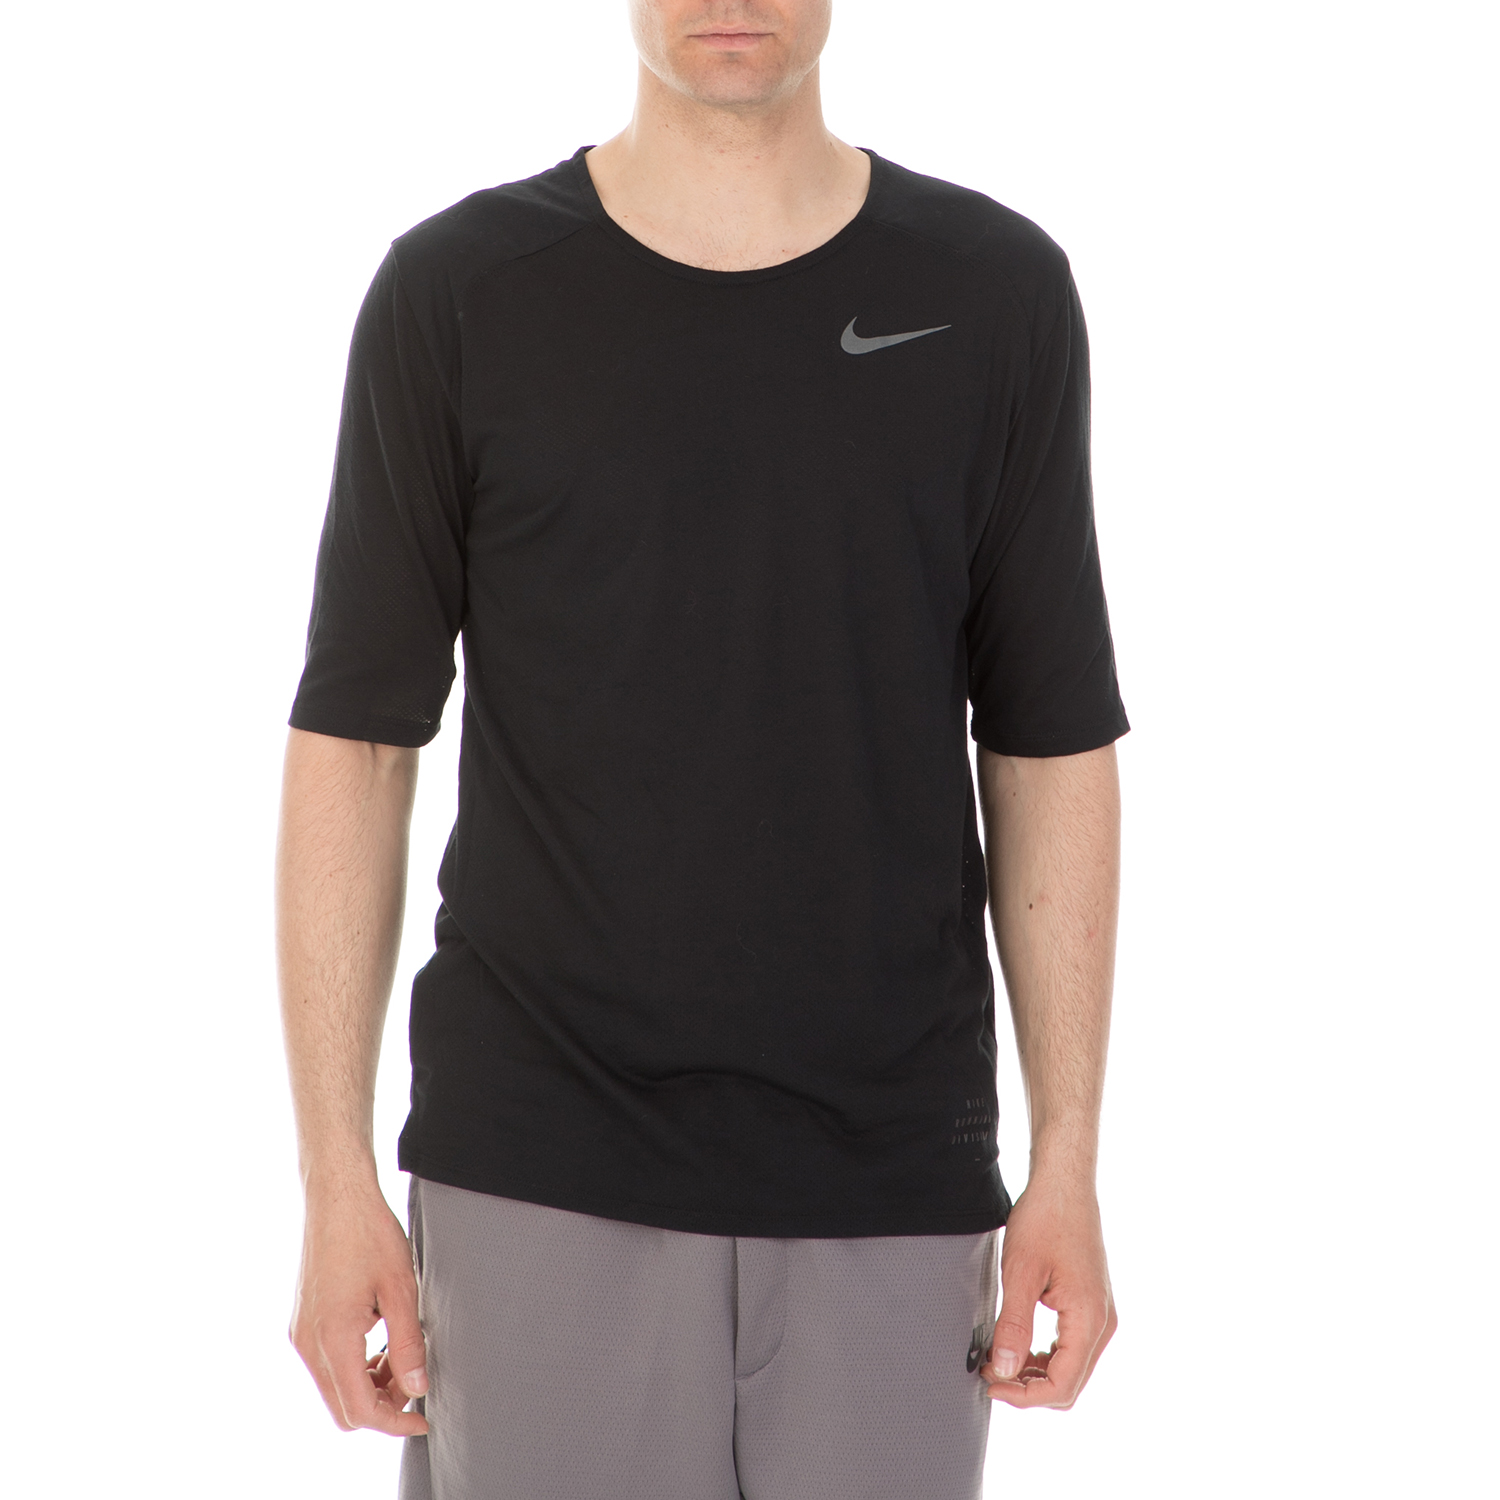 Ανδρικά/Ρούχα/Αθλητικά/T-shirt NIKE - Ανδρική κοντομάνικη μπλούζα NIKE BRTHE TLWND μαύρη